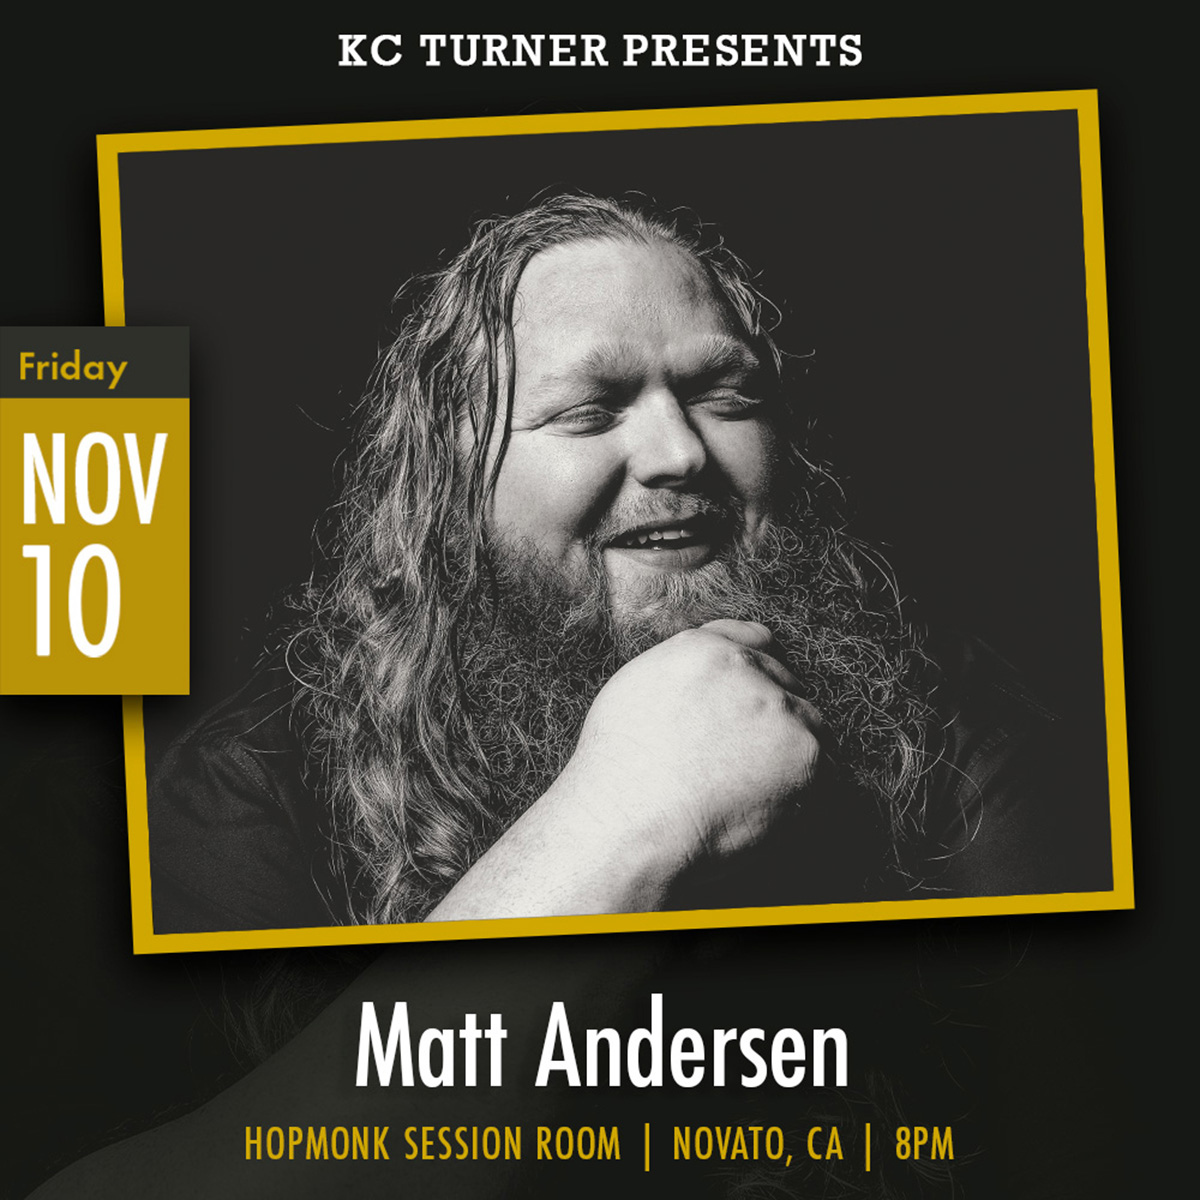 Matt Andersen, Live Music in Marin November